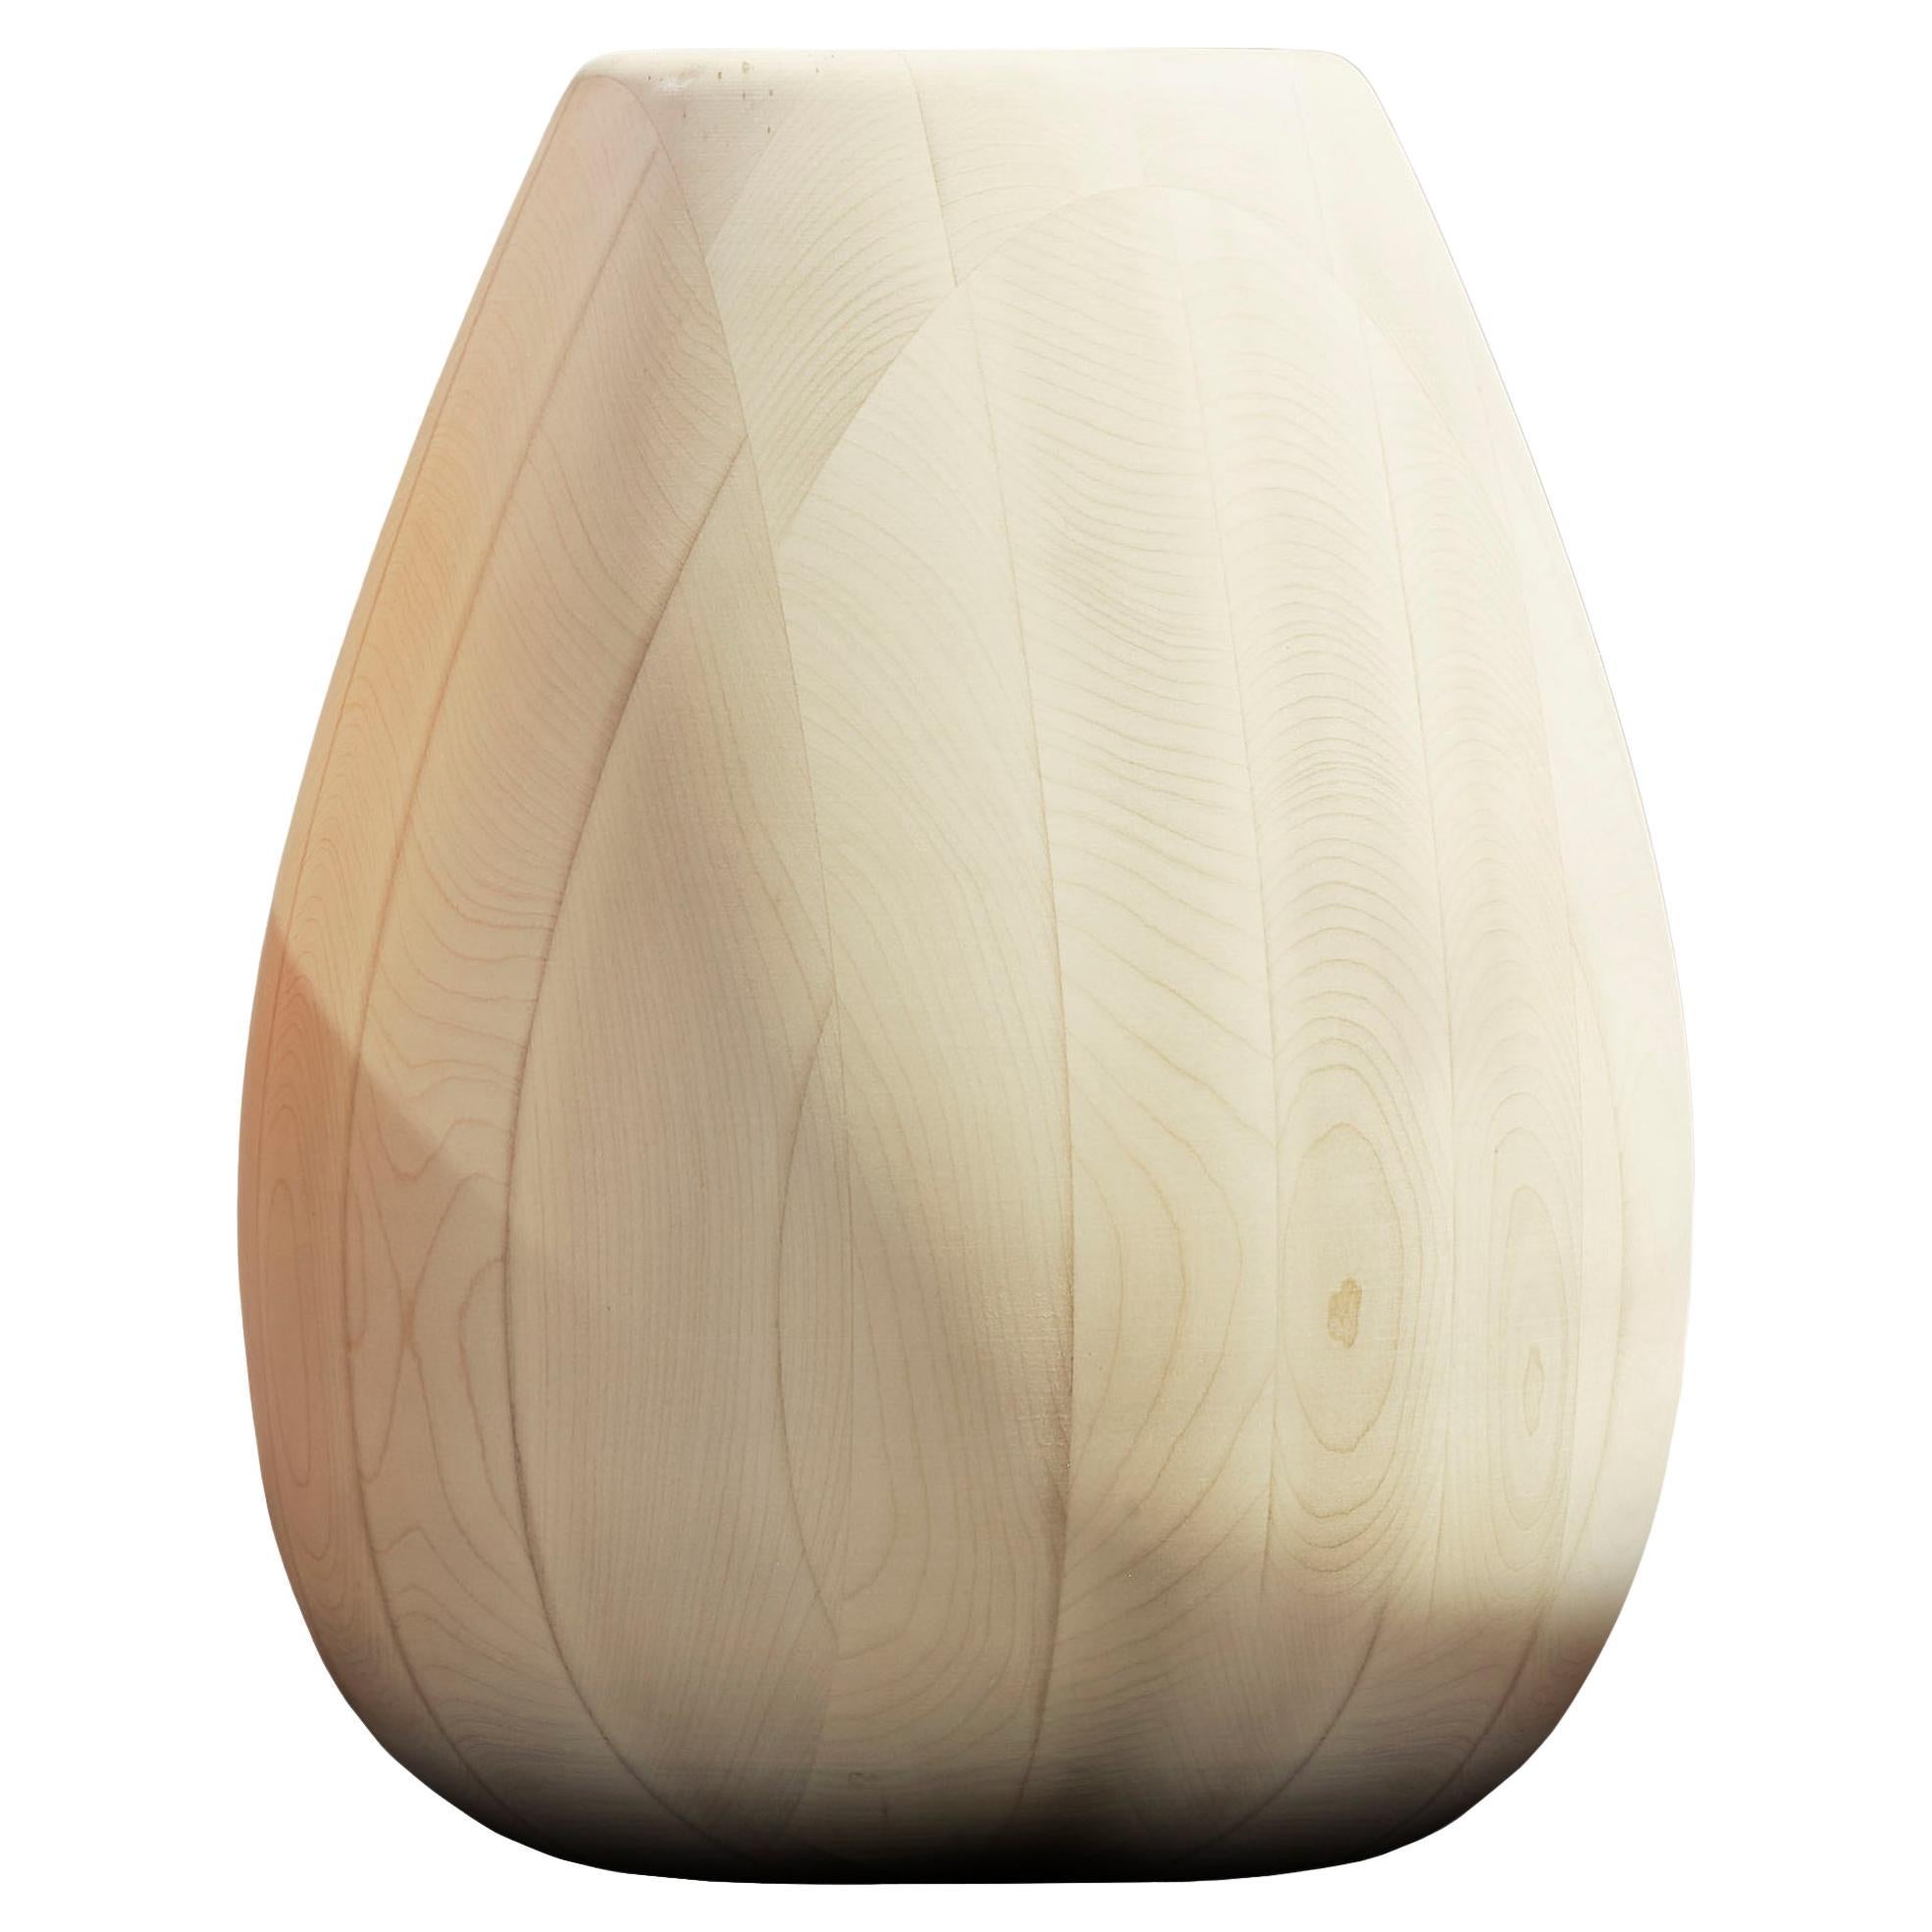 Maple Wood Vase h50 design Franco Albini - edit b Officina della Scala For Sale